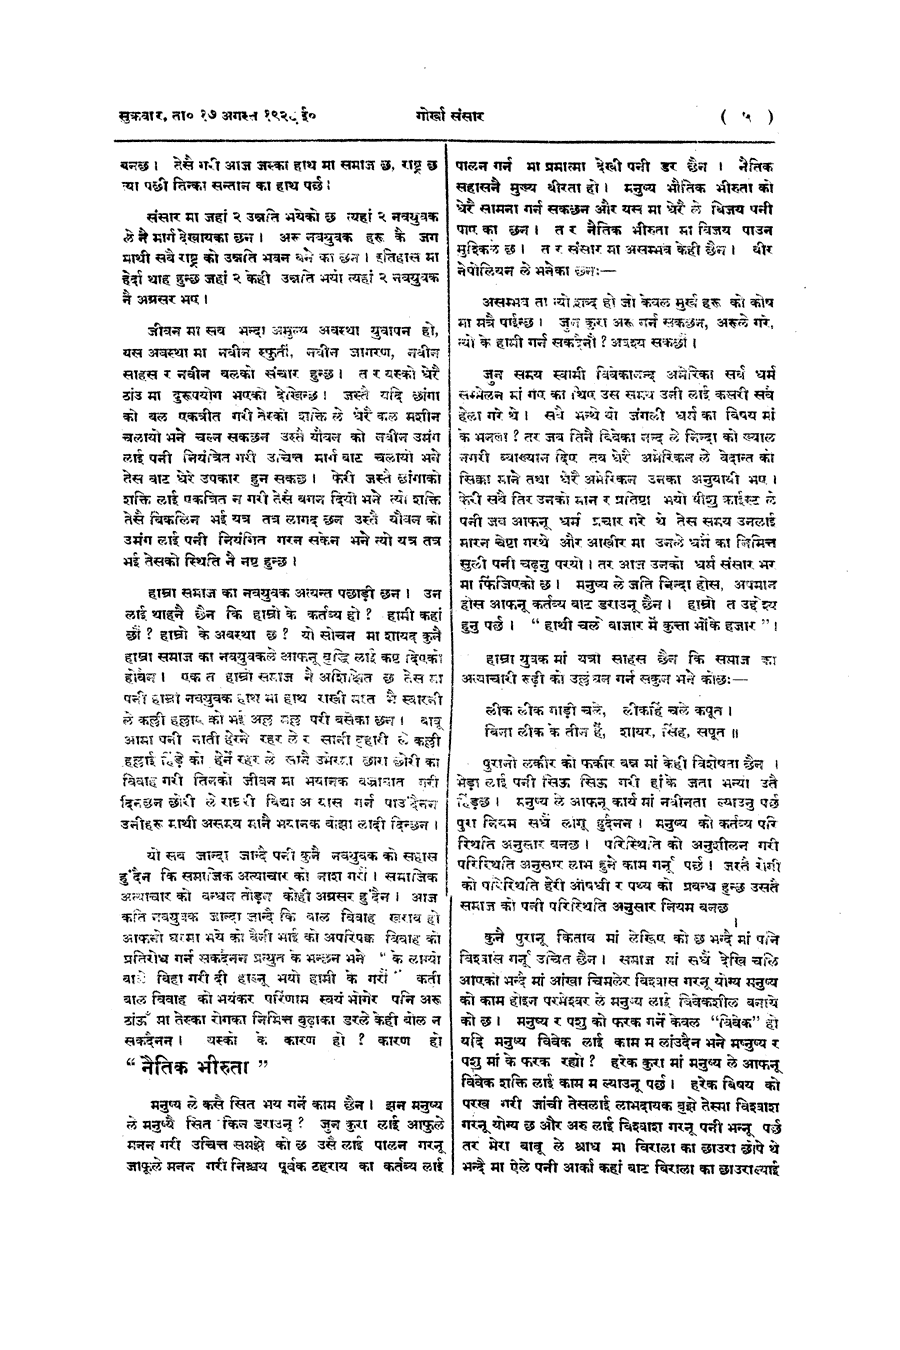 Gorkha Sansar, 17 Aug 1928, page 5